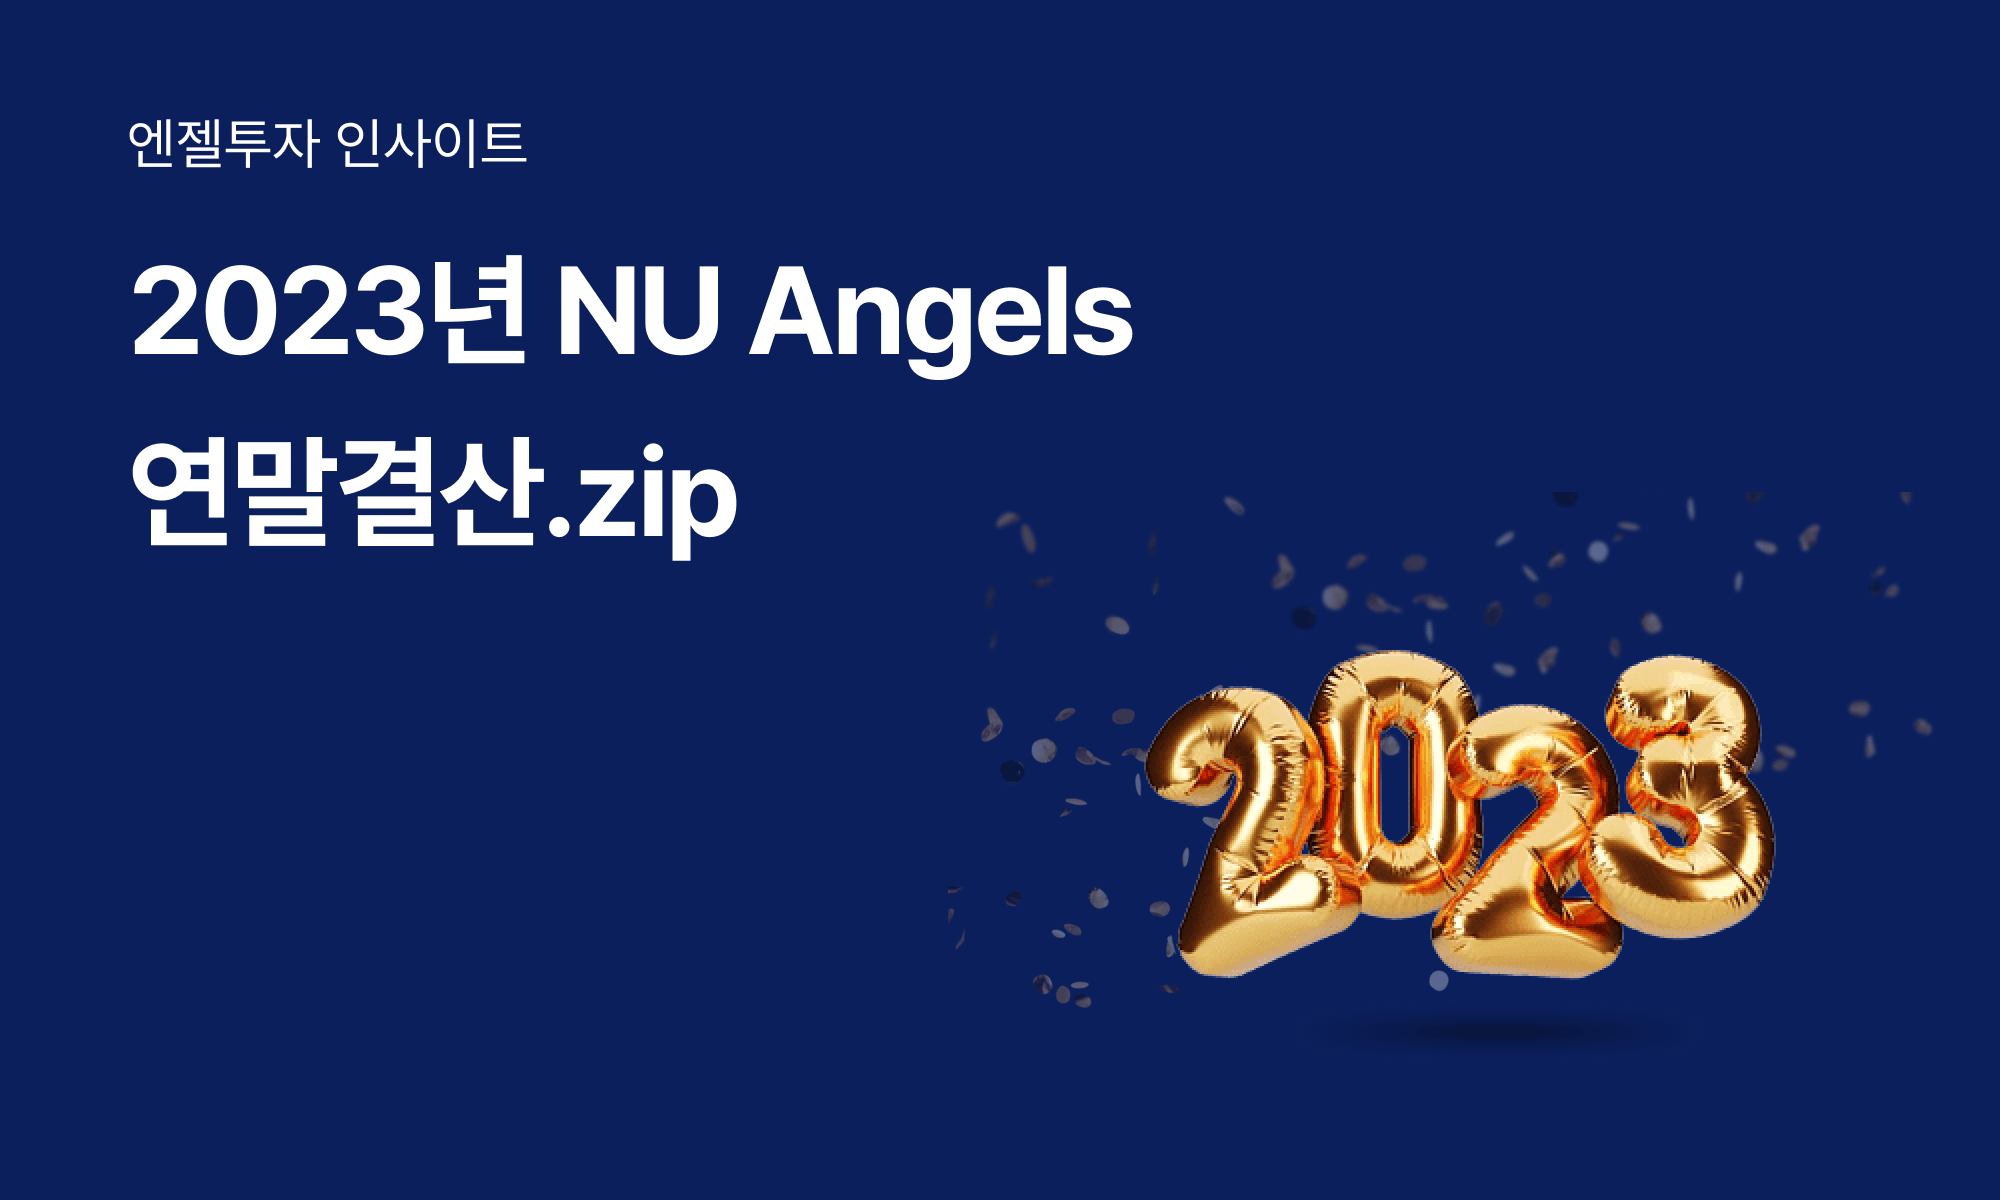 2023년 NU Angels 투자자들이 가장 많이 주목한 분야는?